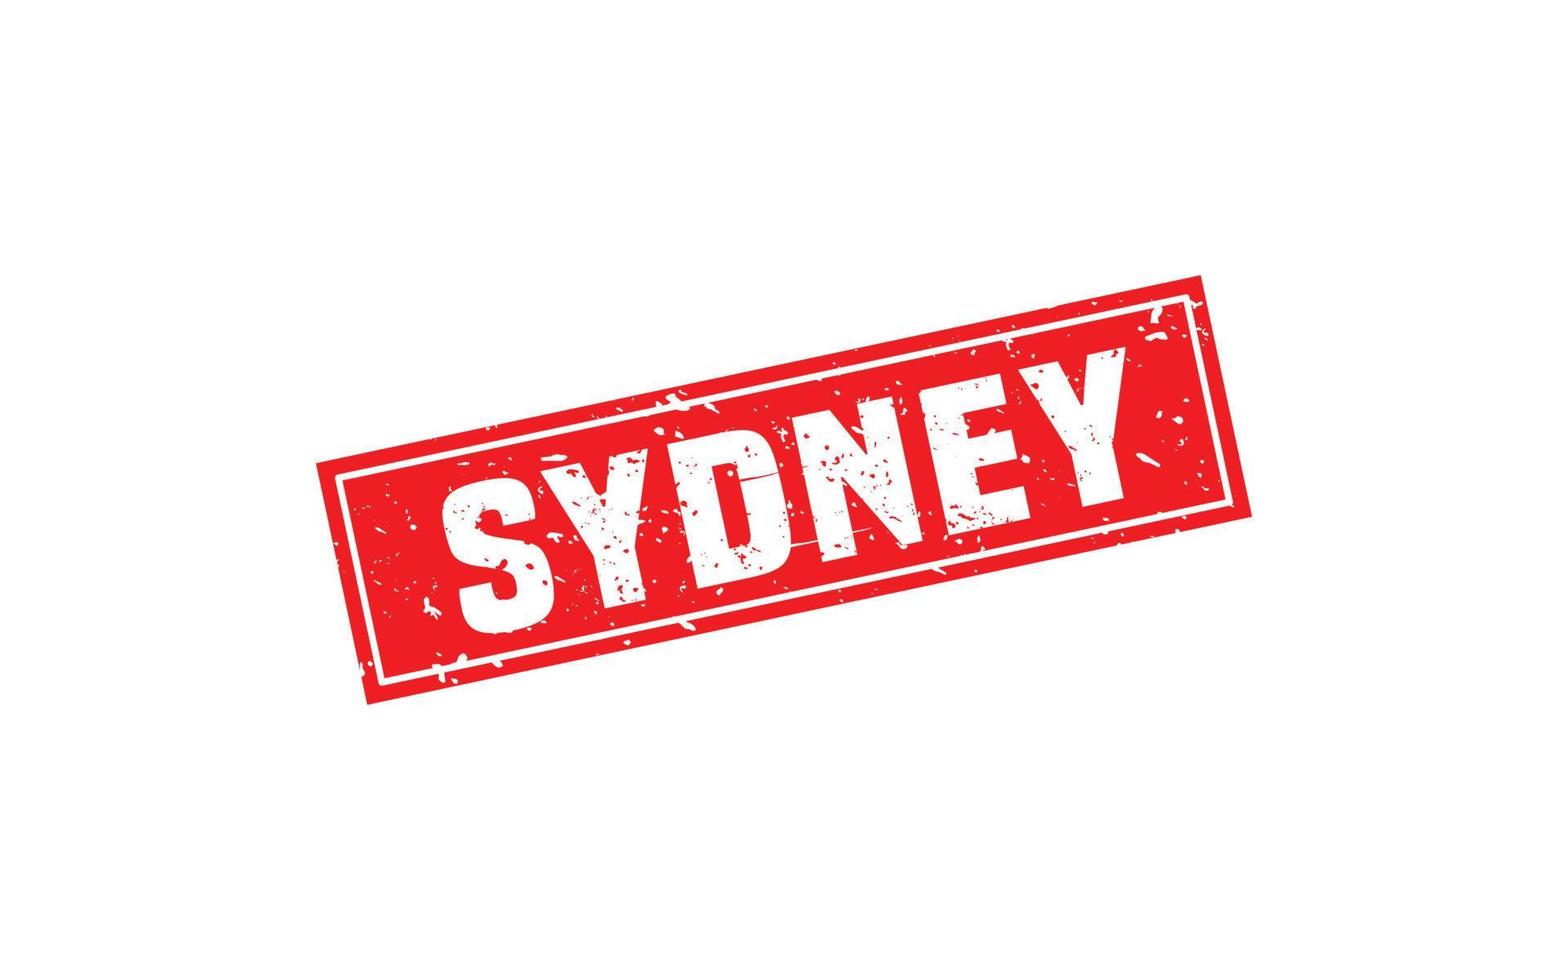 Sydney-Australien-Stempel mit Grunge-Stil auf weißem Hintergrund vektor